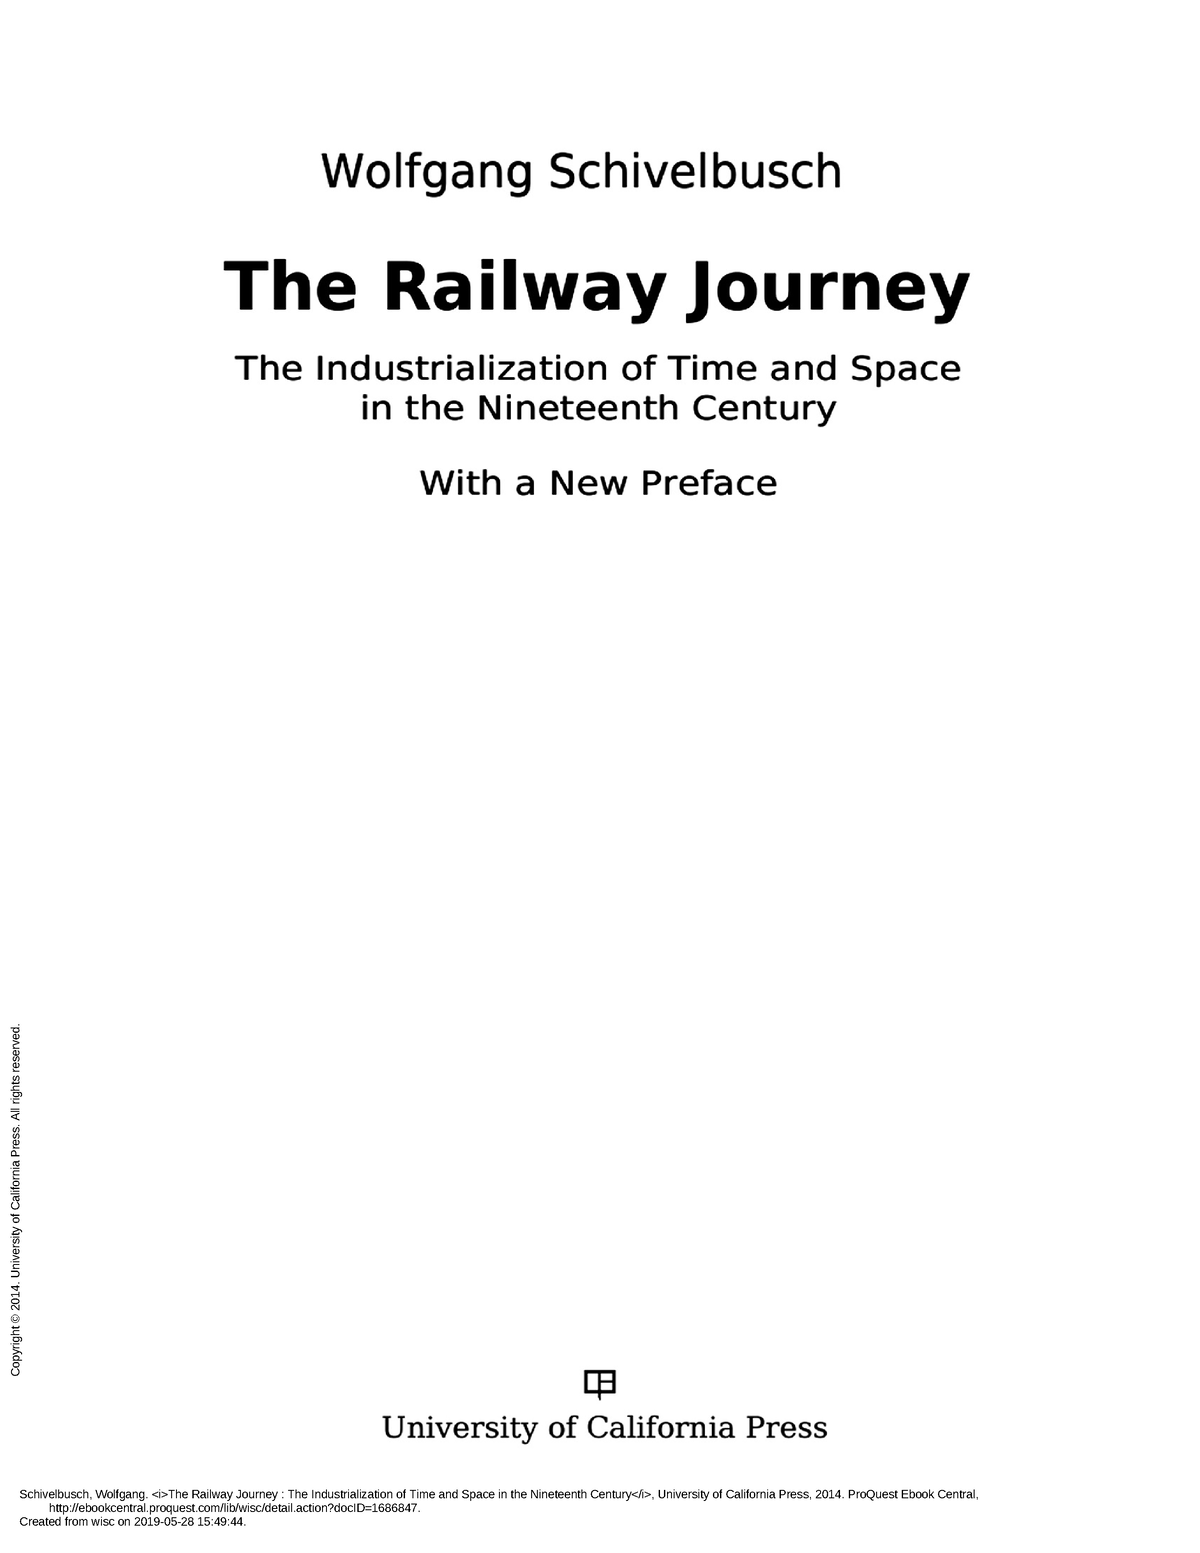 Wolfgang Schivelbusch The Railway Journey